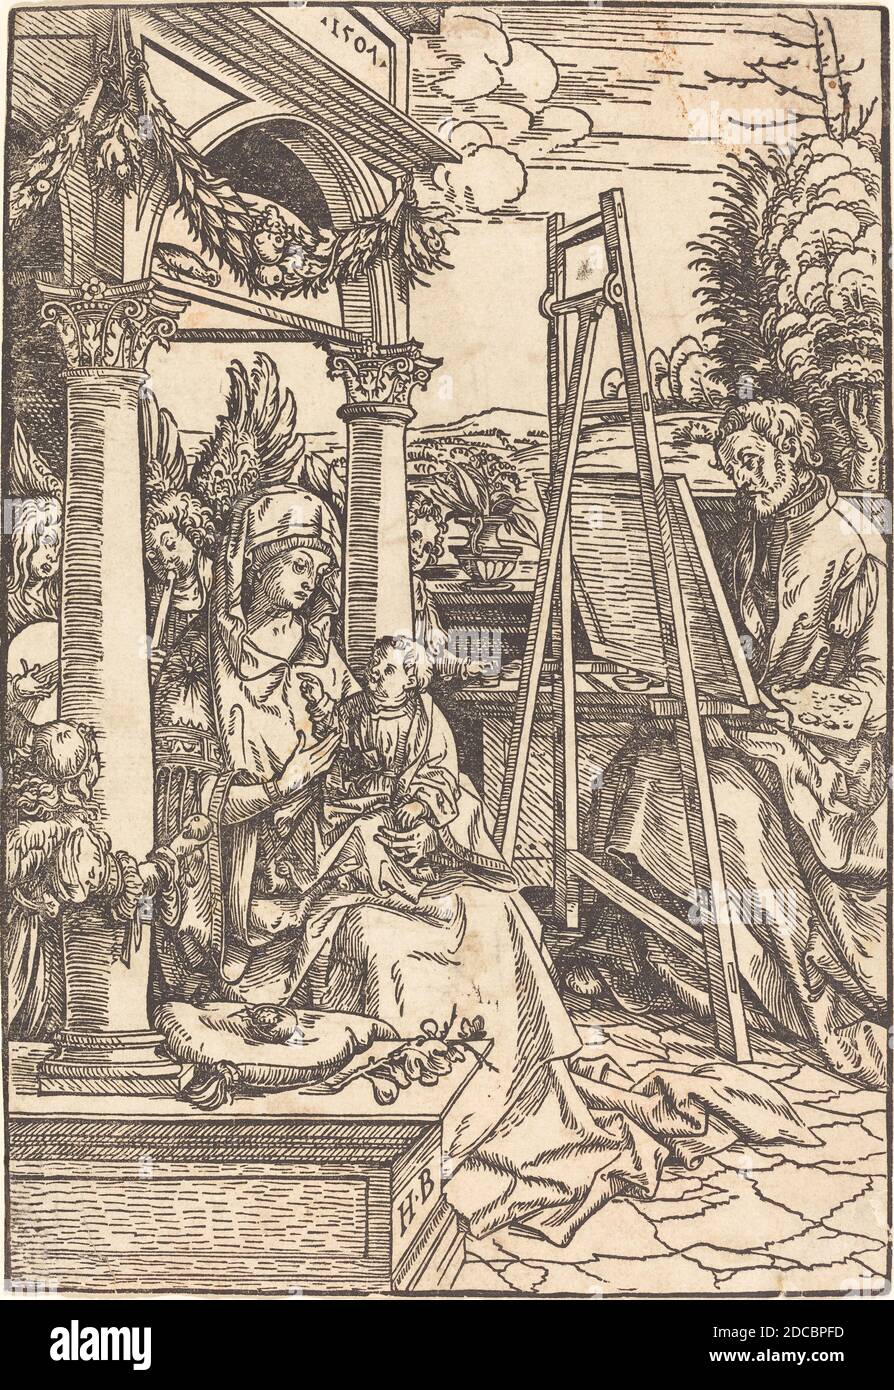 Hans Burgkmair I, (artiste), allemand, 1473 - 1531, Saint Luke Painting the Portrait of the Virgin, 1507, coupe de bois Banque D'Images